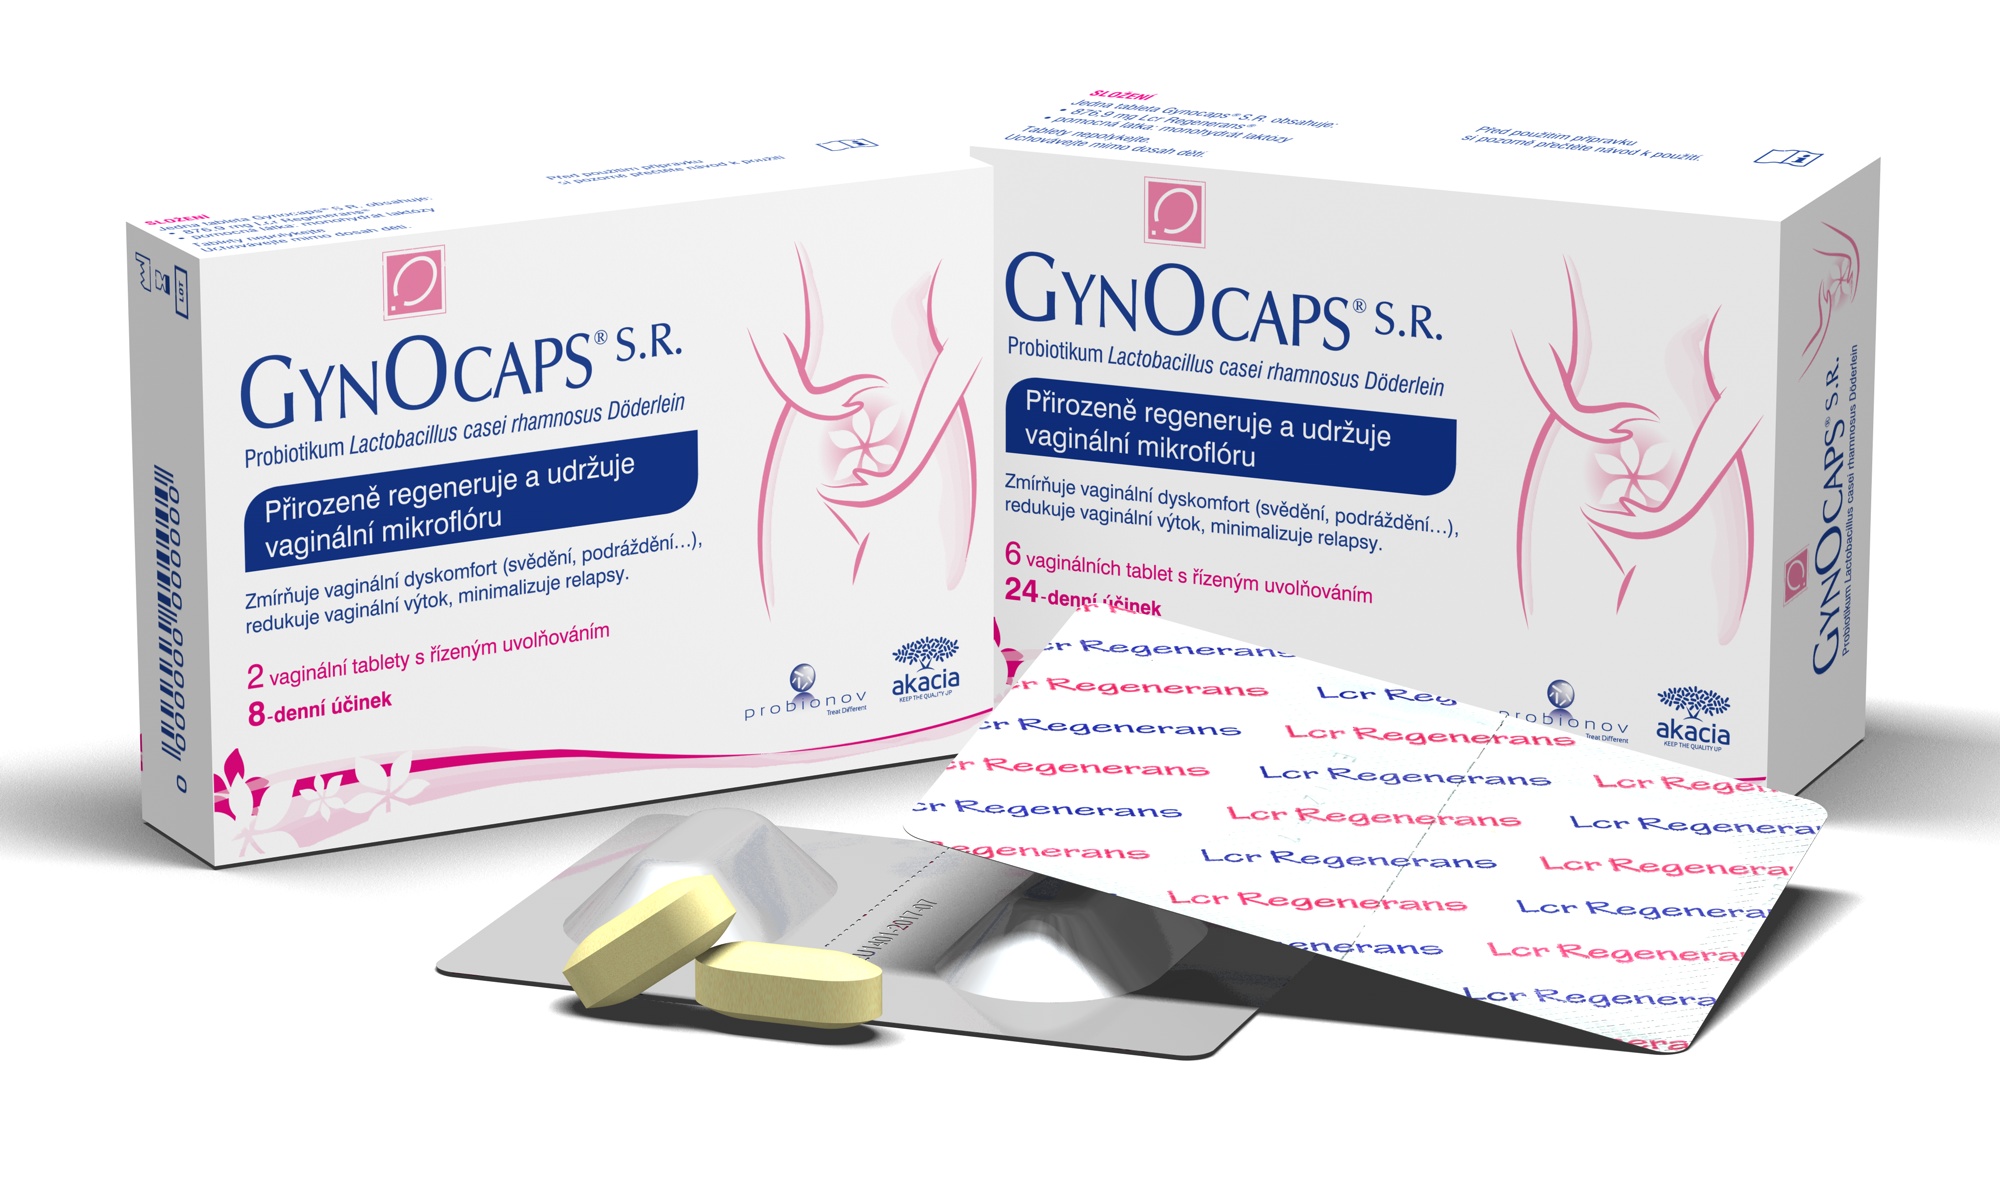 Gynocaps